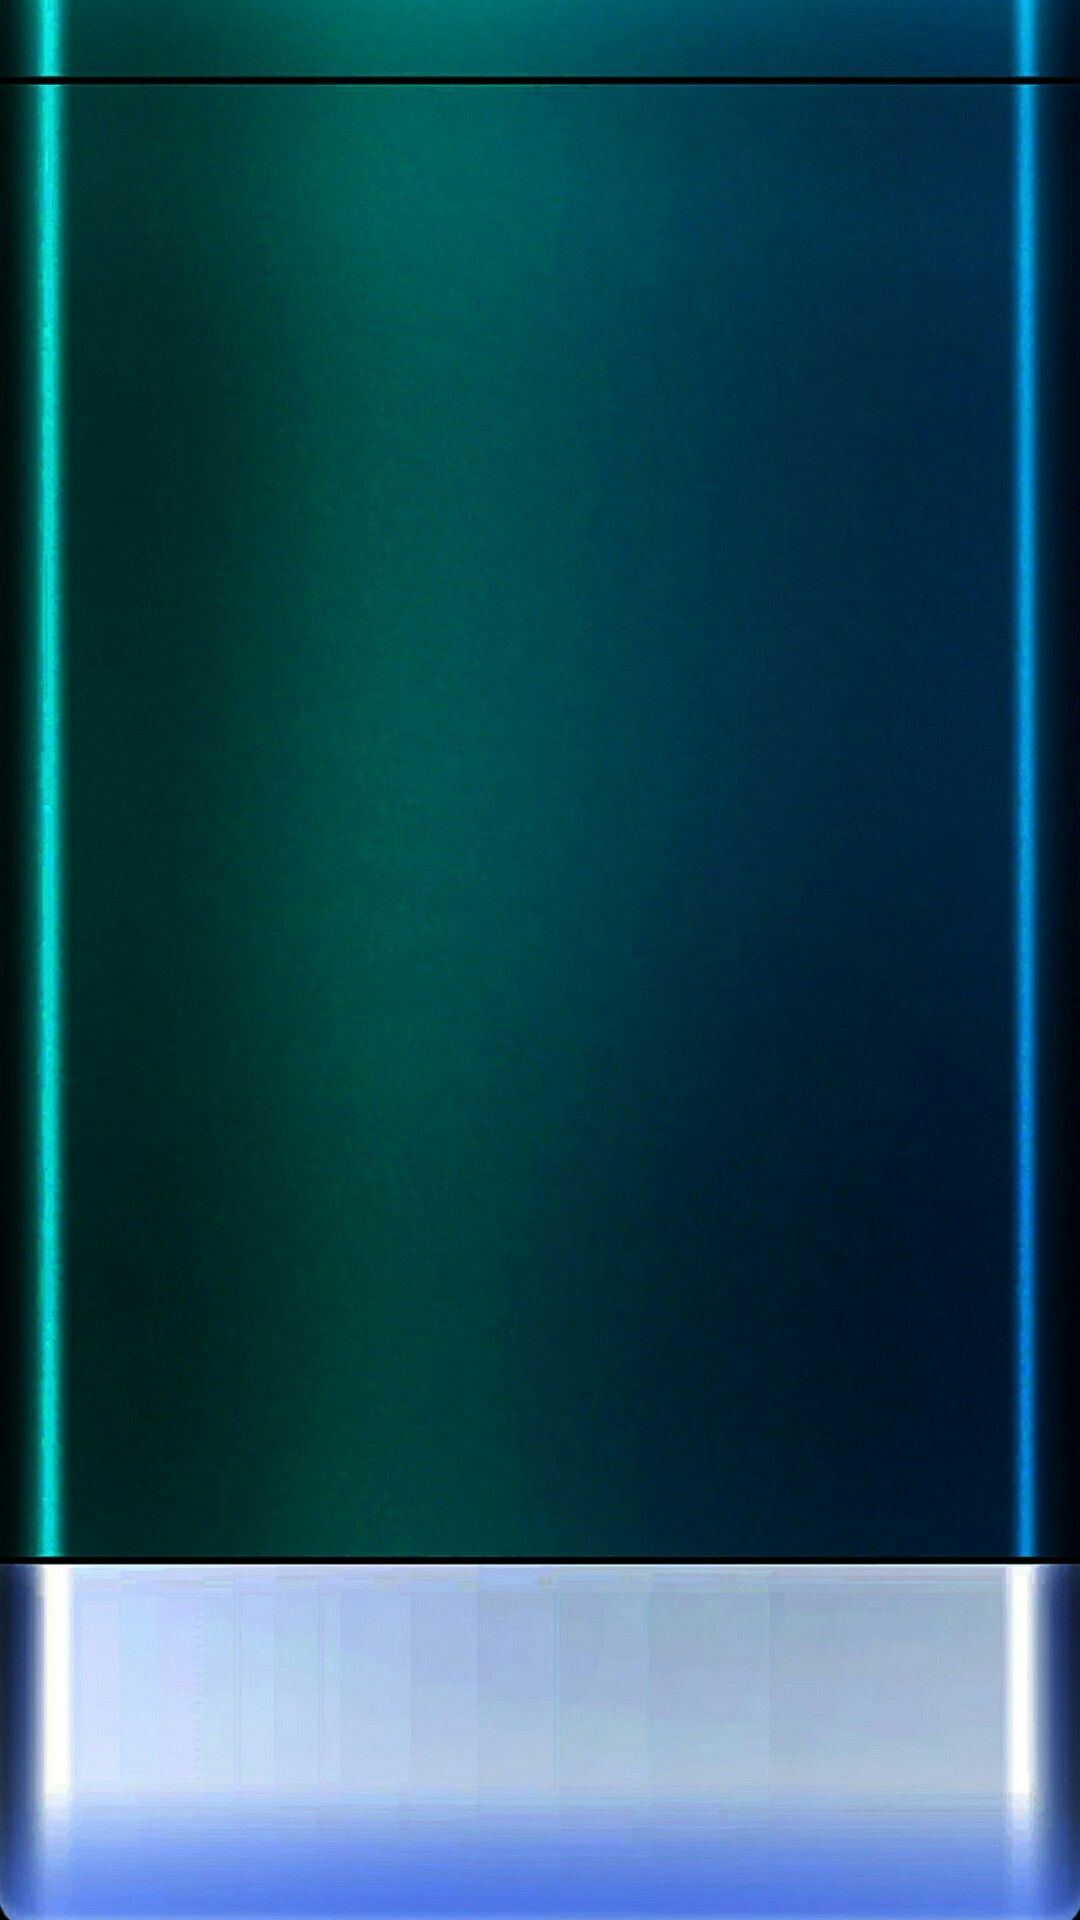 fond d'écran d'écran de bord,bleu,vert,aqua,turquoise,bleu cobalt